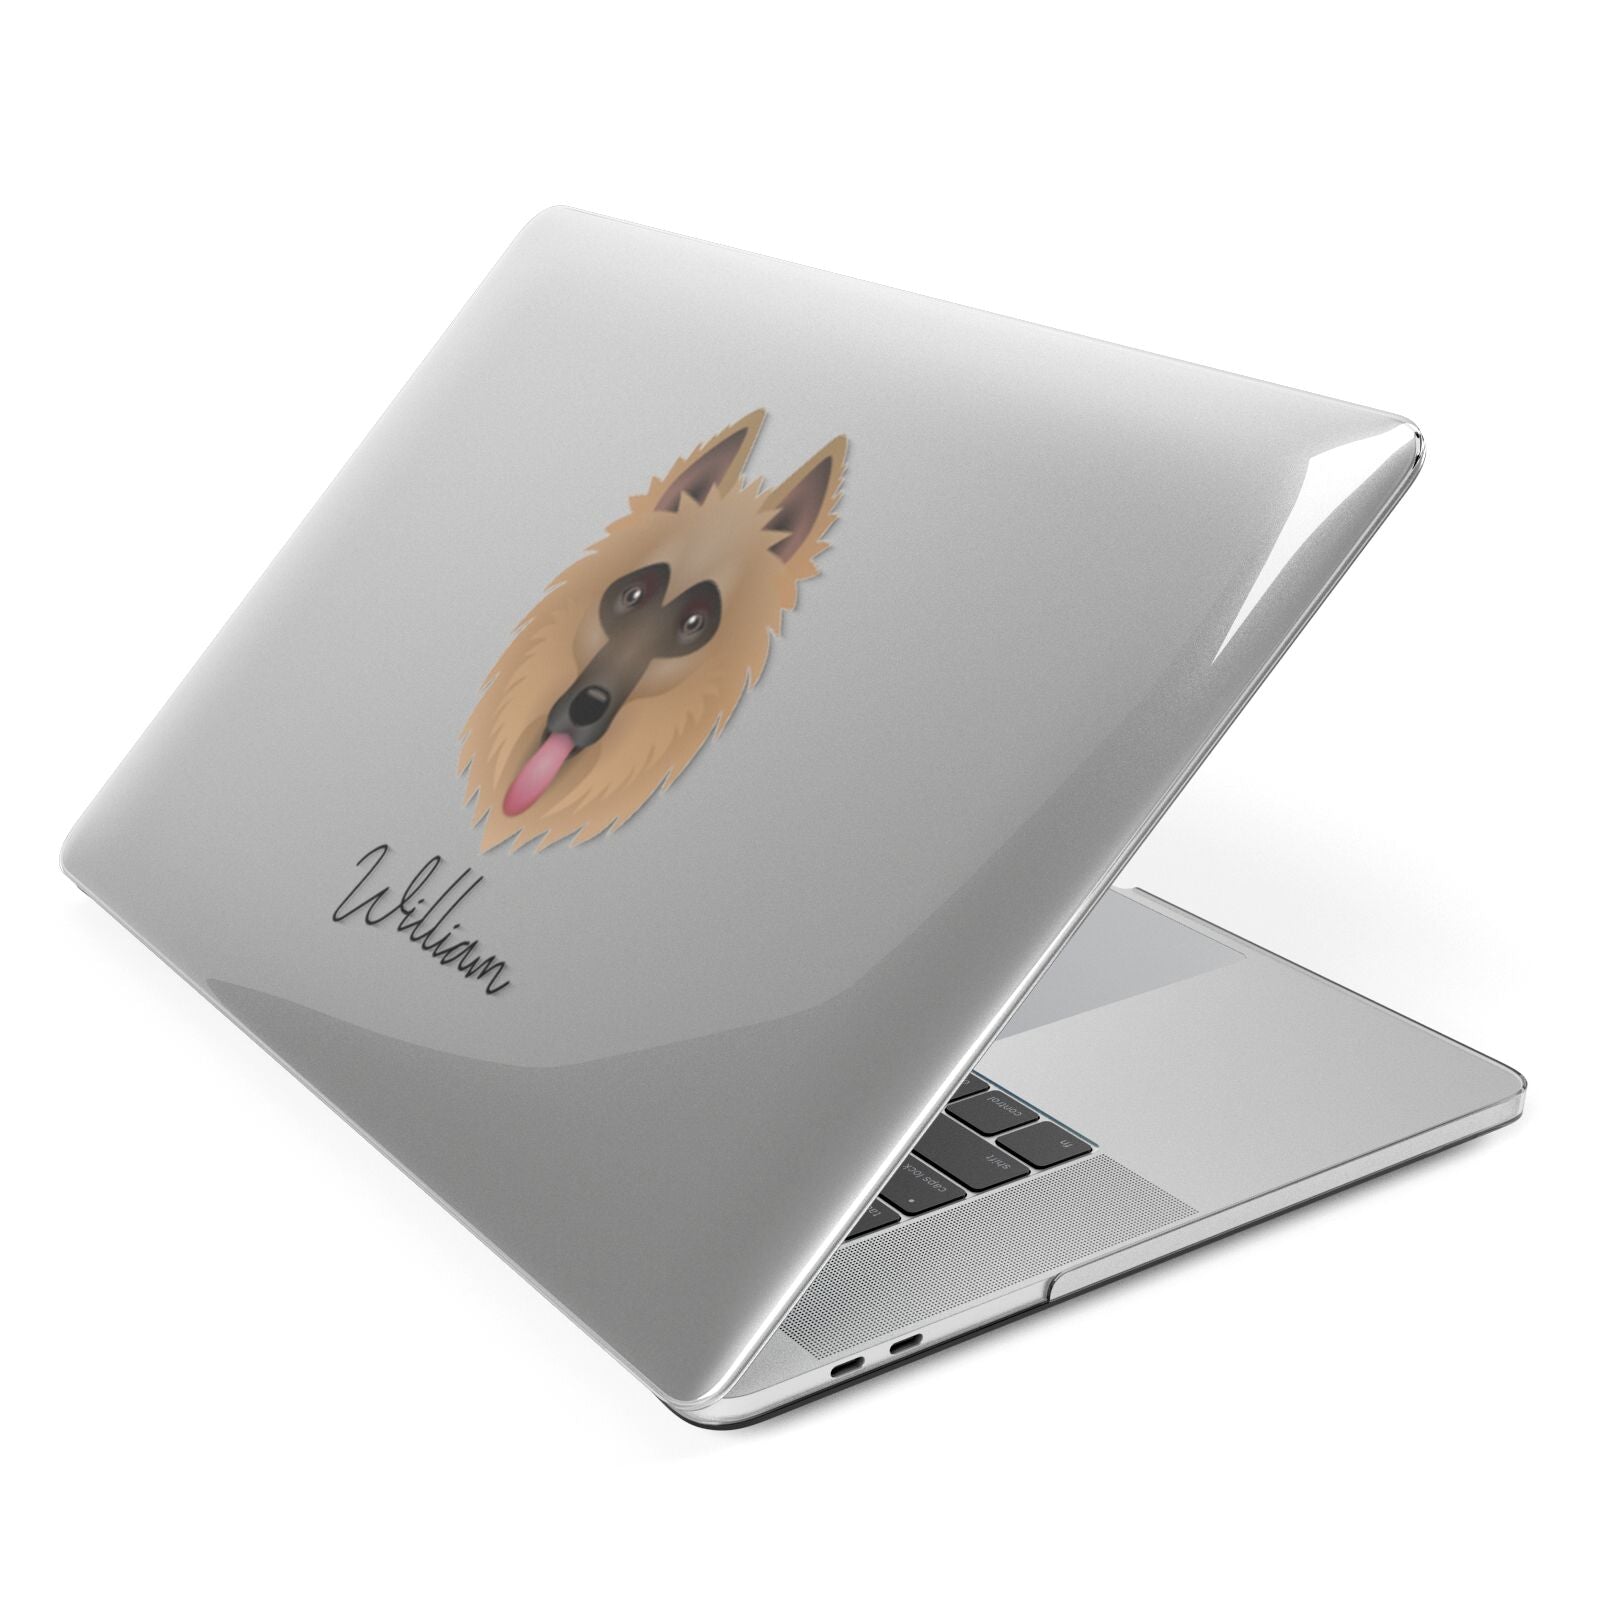 Belgian Shepherd Personalised Apple MacBook Case Side View